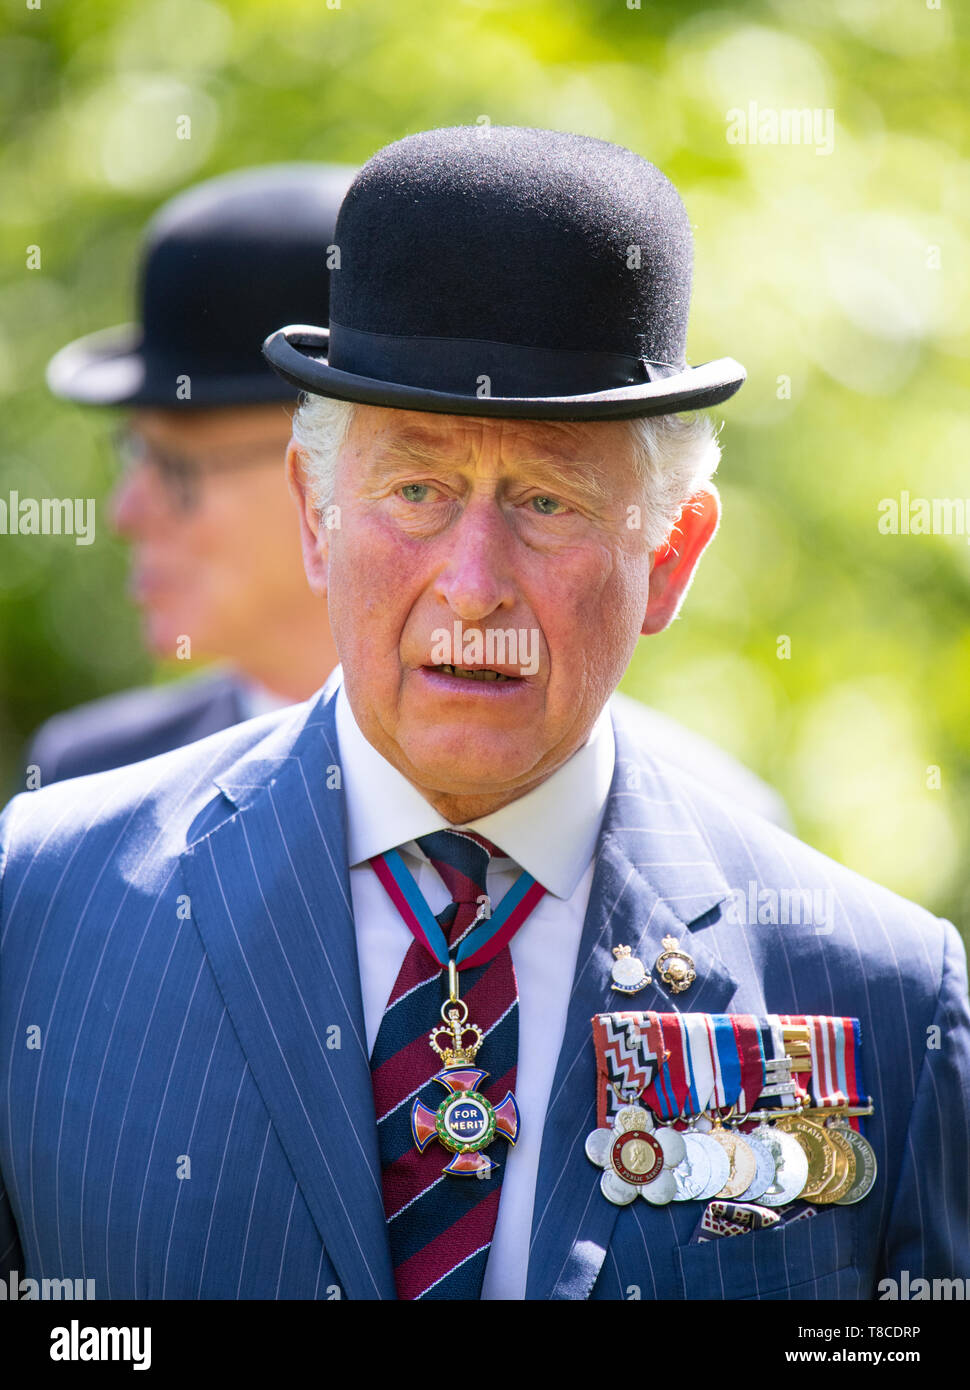 Le Prince de Galles assiste à la Cavalerie combiné annuel Association anciens camarades parade, à Hyde Park, Londres, qui rend hommage aux membres de la Yeomanry Cavalry et tués dans la Première Guerre mondiale et dans les conflits ultérieurs. Banque D'Images